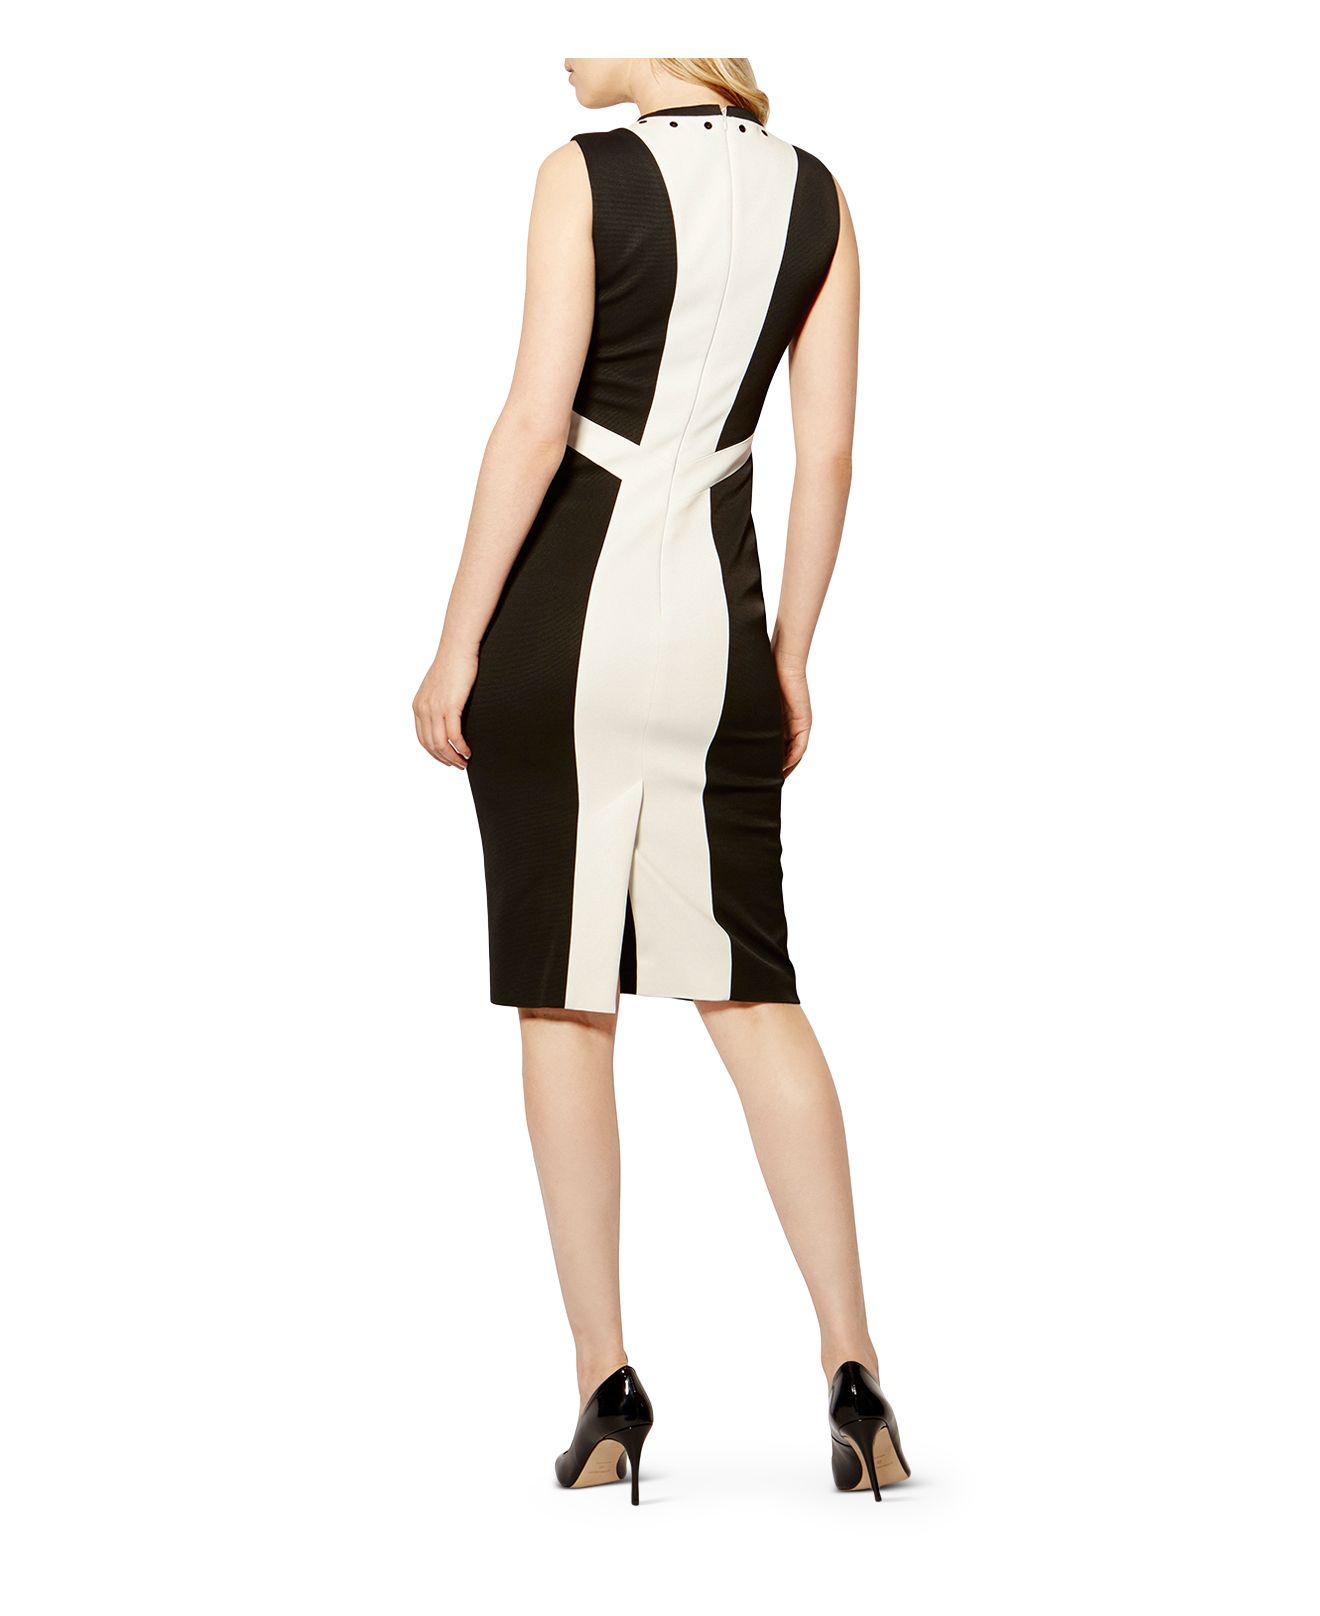 Karen Millen White Contrast Panel Dress - Black & White | Lyst